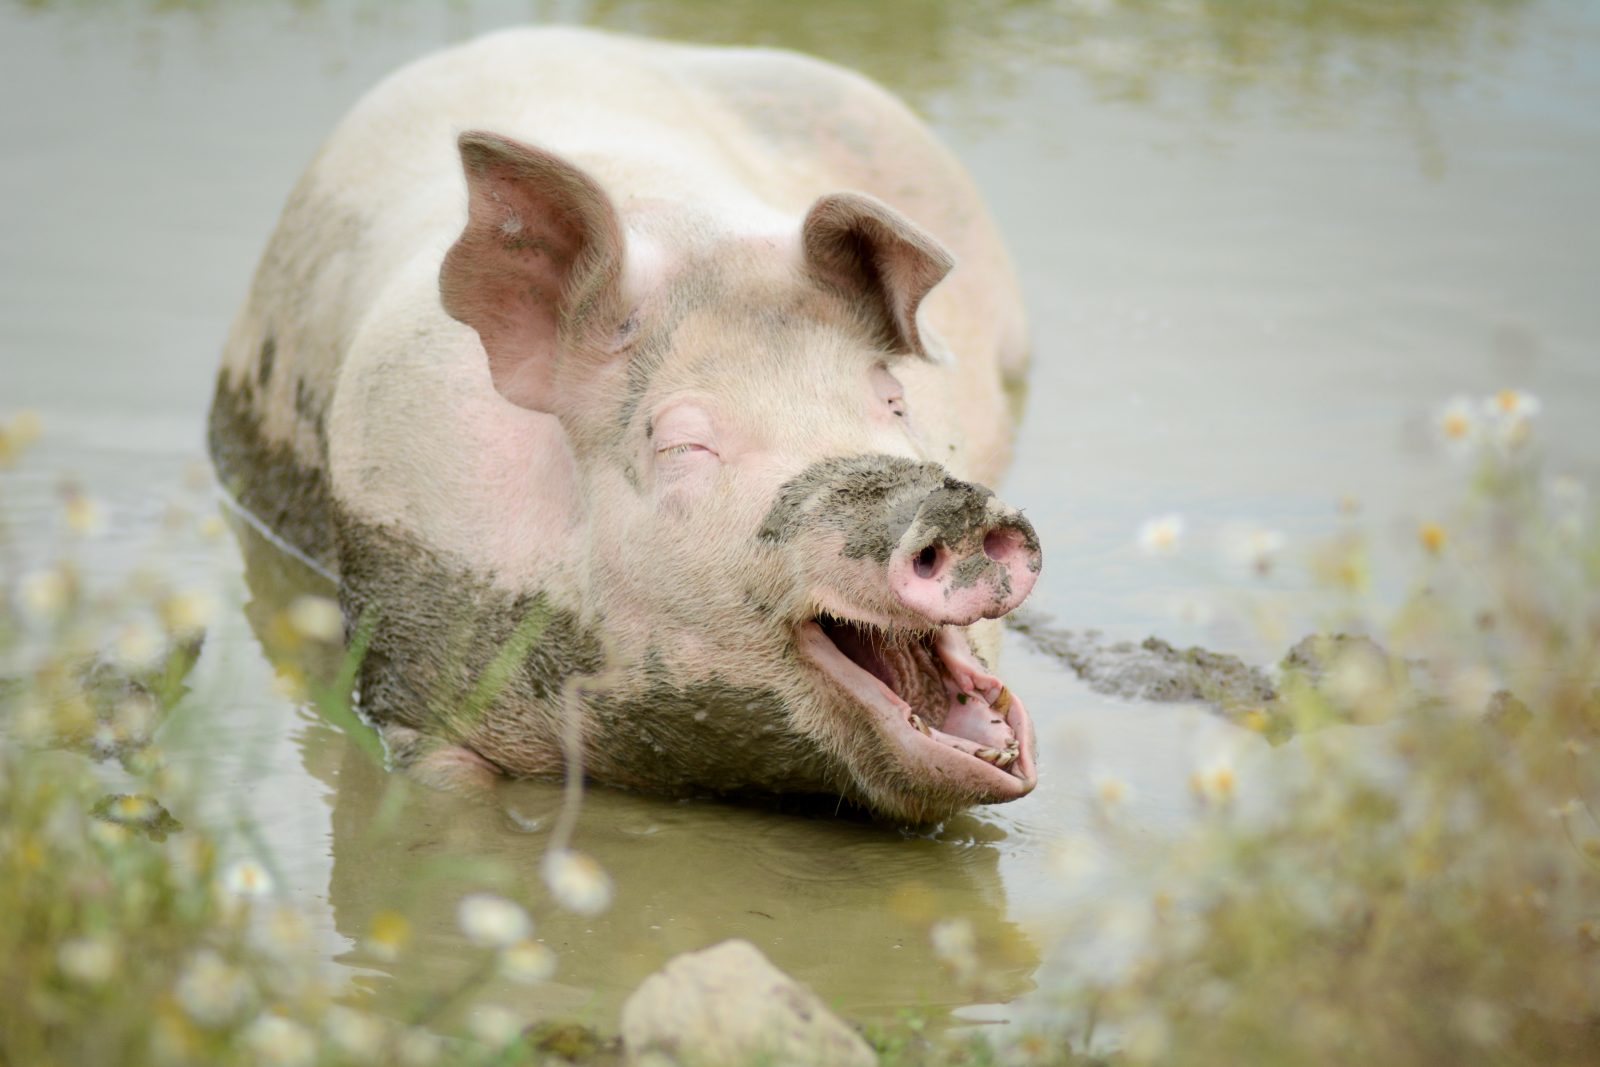 Mia pig in the mud at Farm Sanctuary